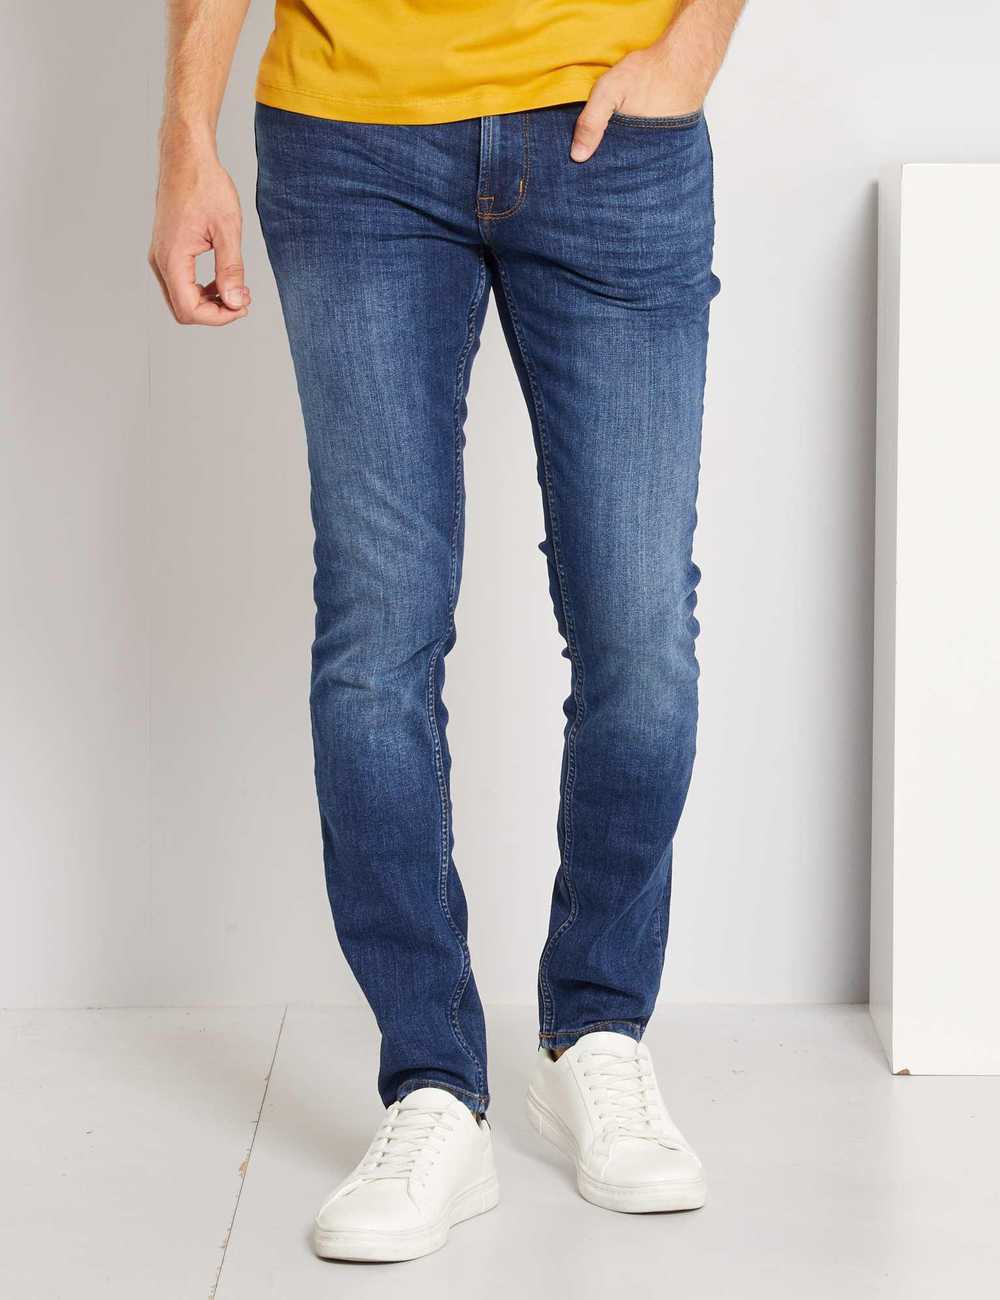 Buy L34 slim-fit eco-design jeans Online in Dubai & the UAE|Kiabi